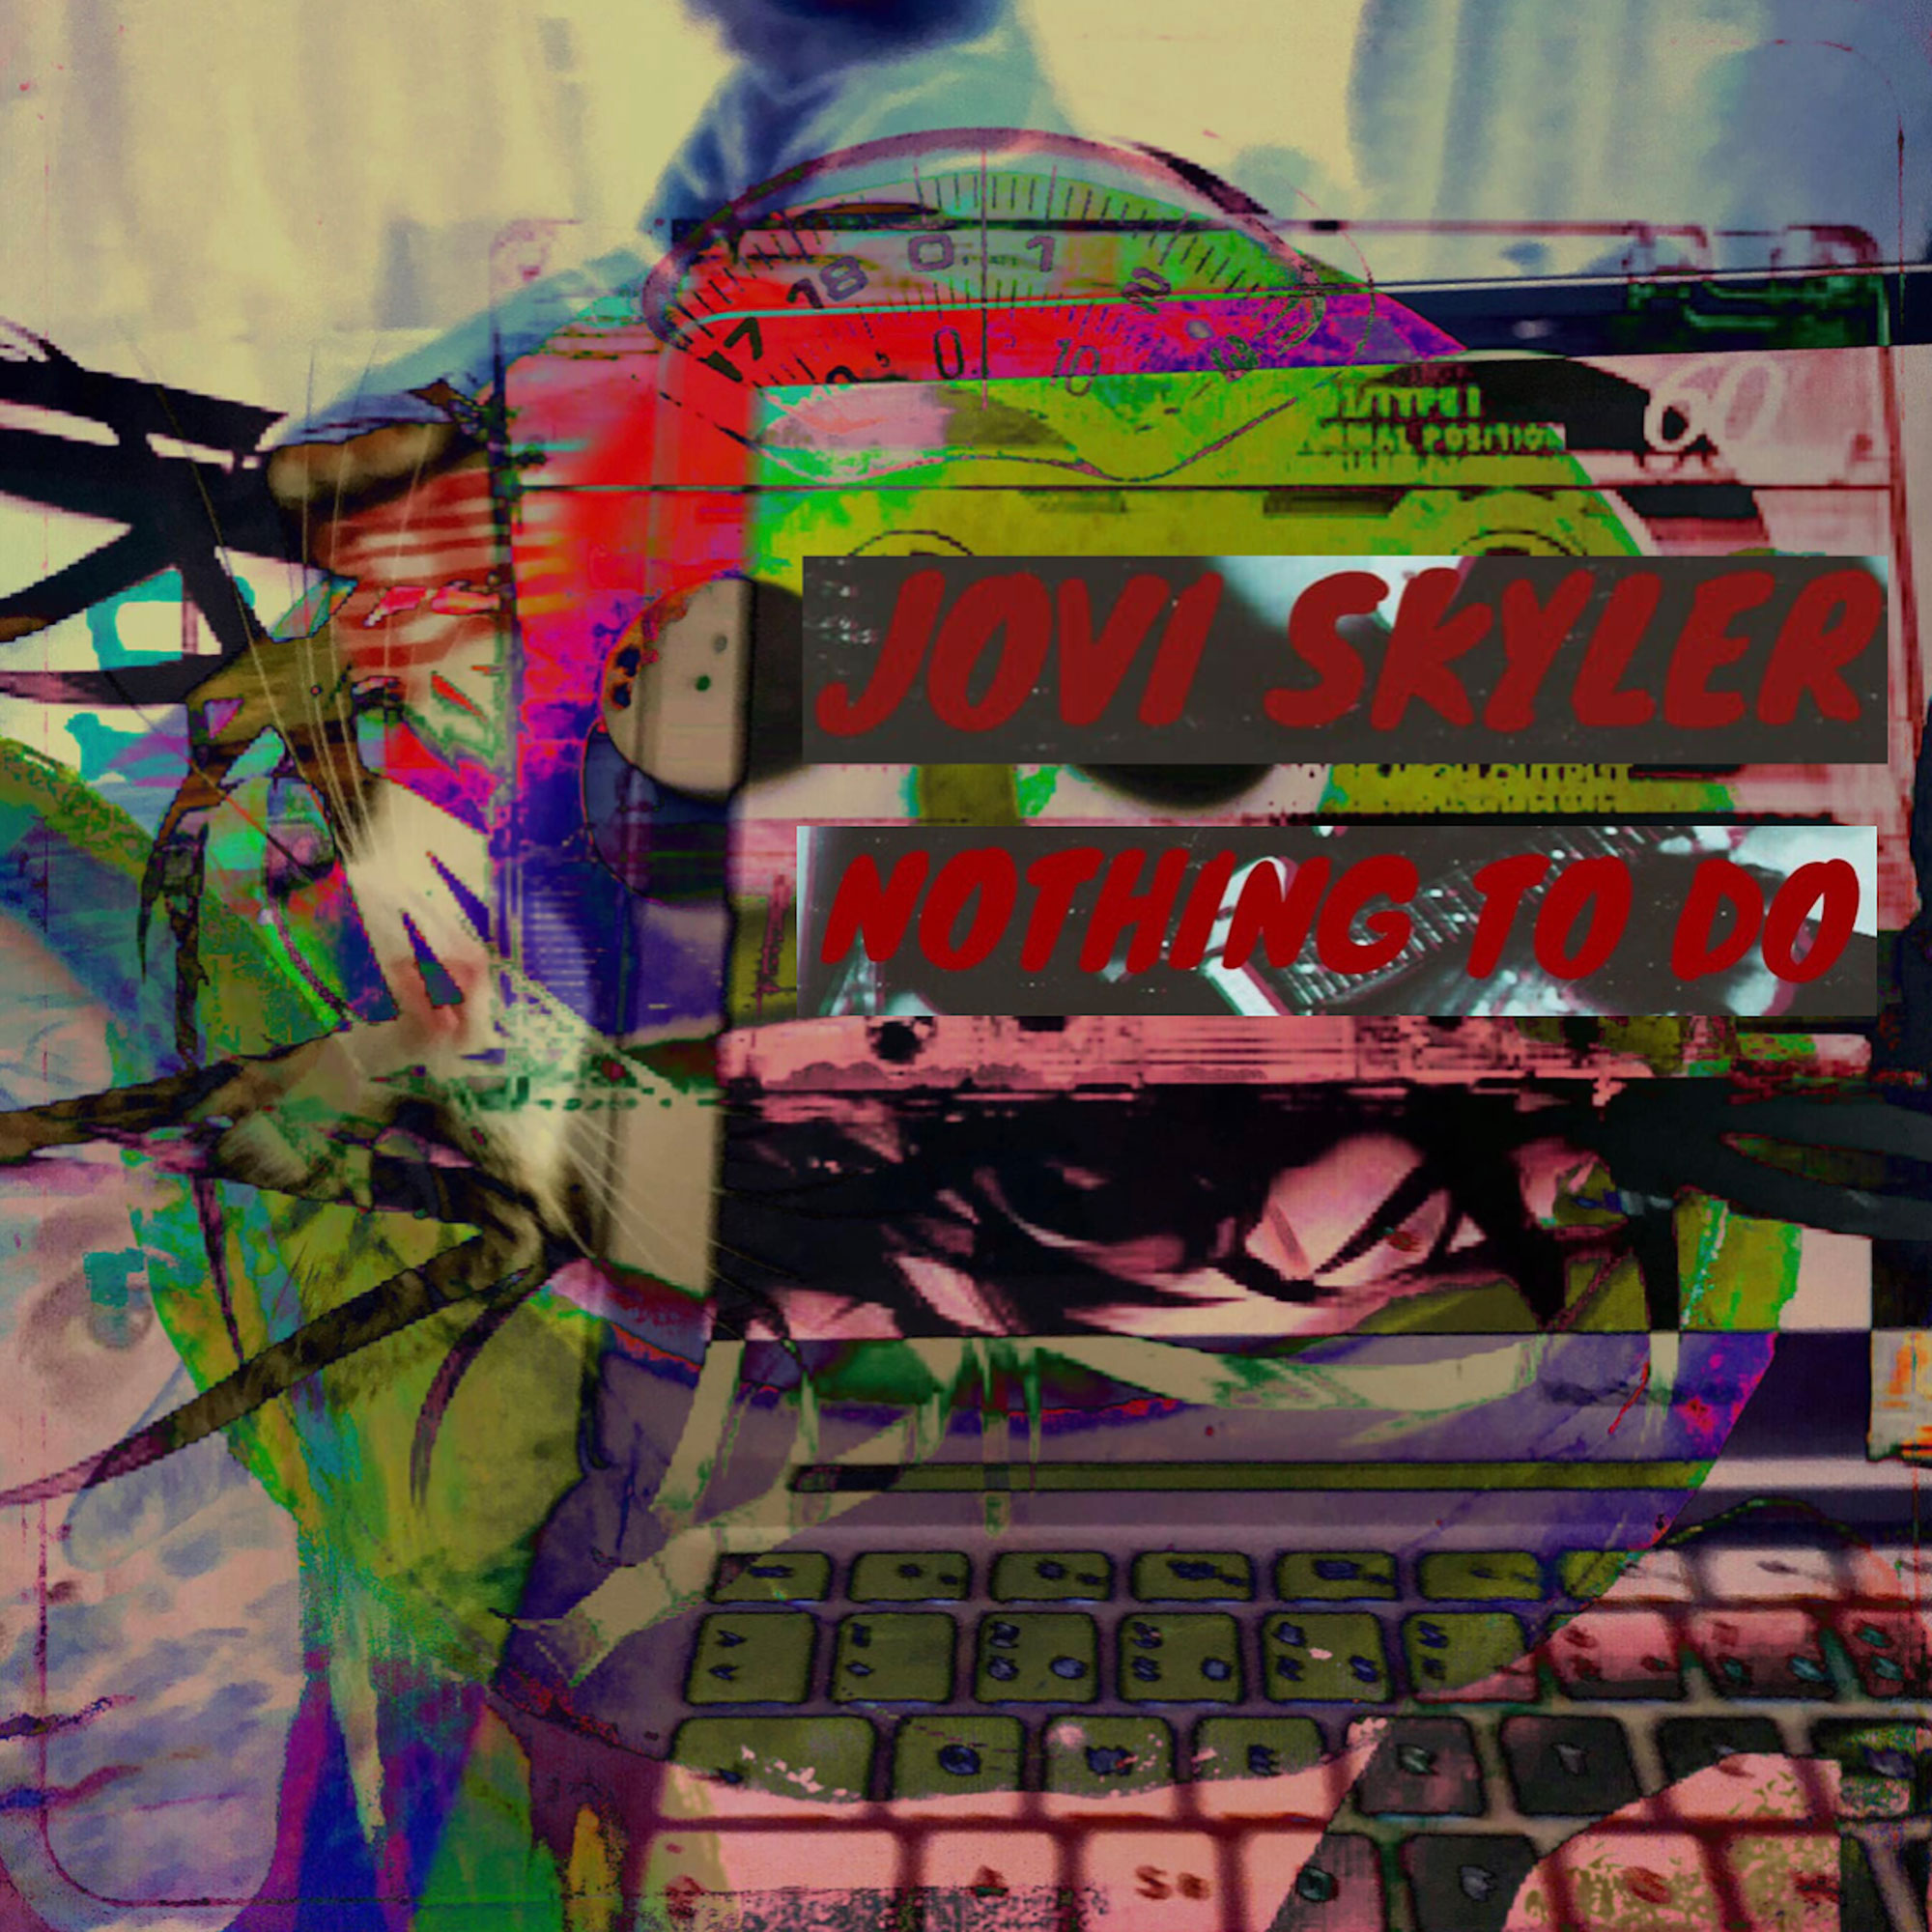  Escucha  “Nothing to Do” de Jovi Skyler, un álbum con un sonido noventero